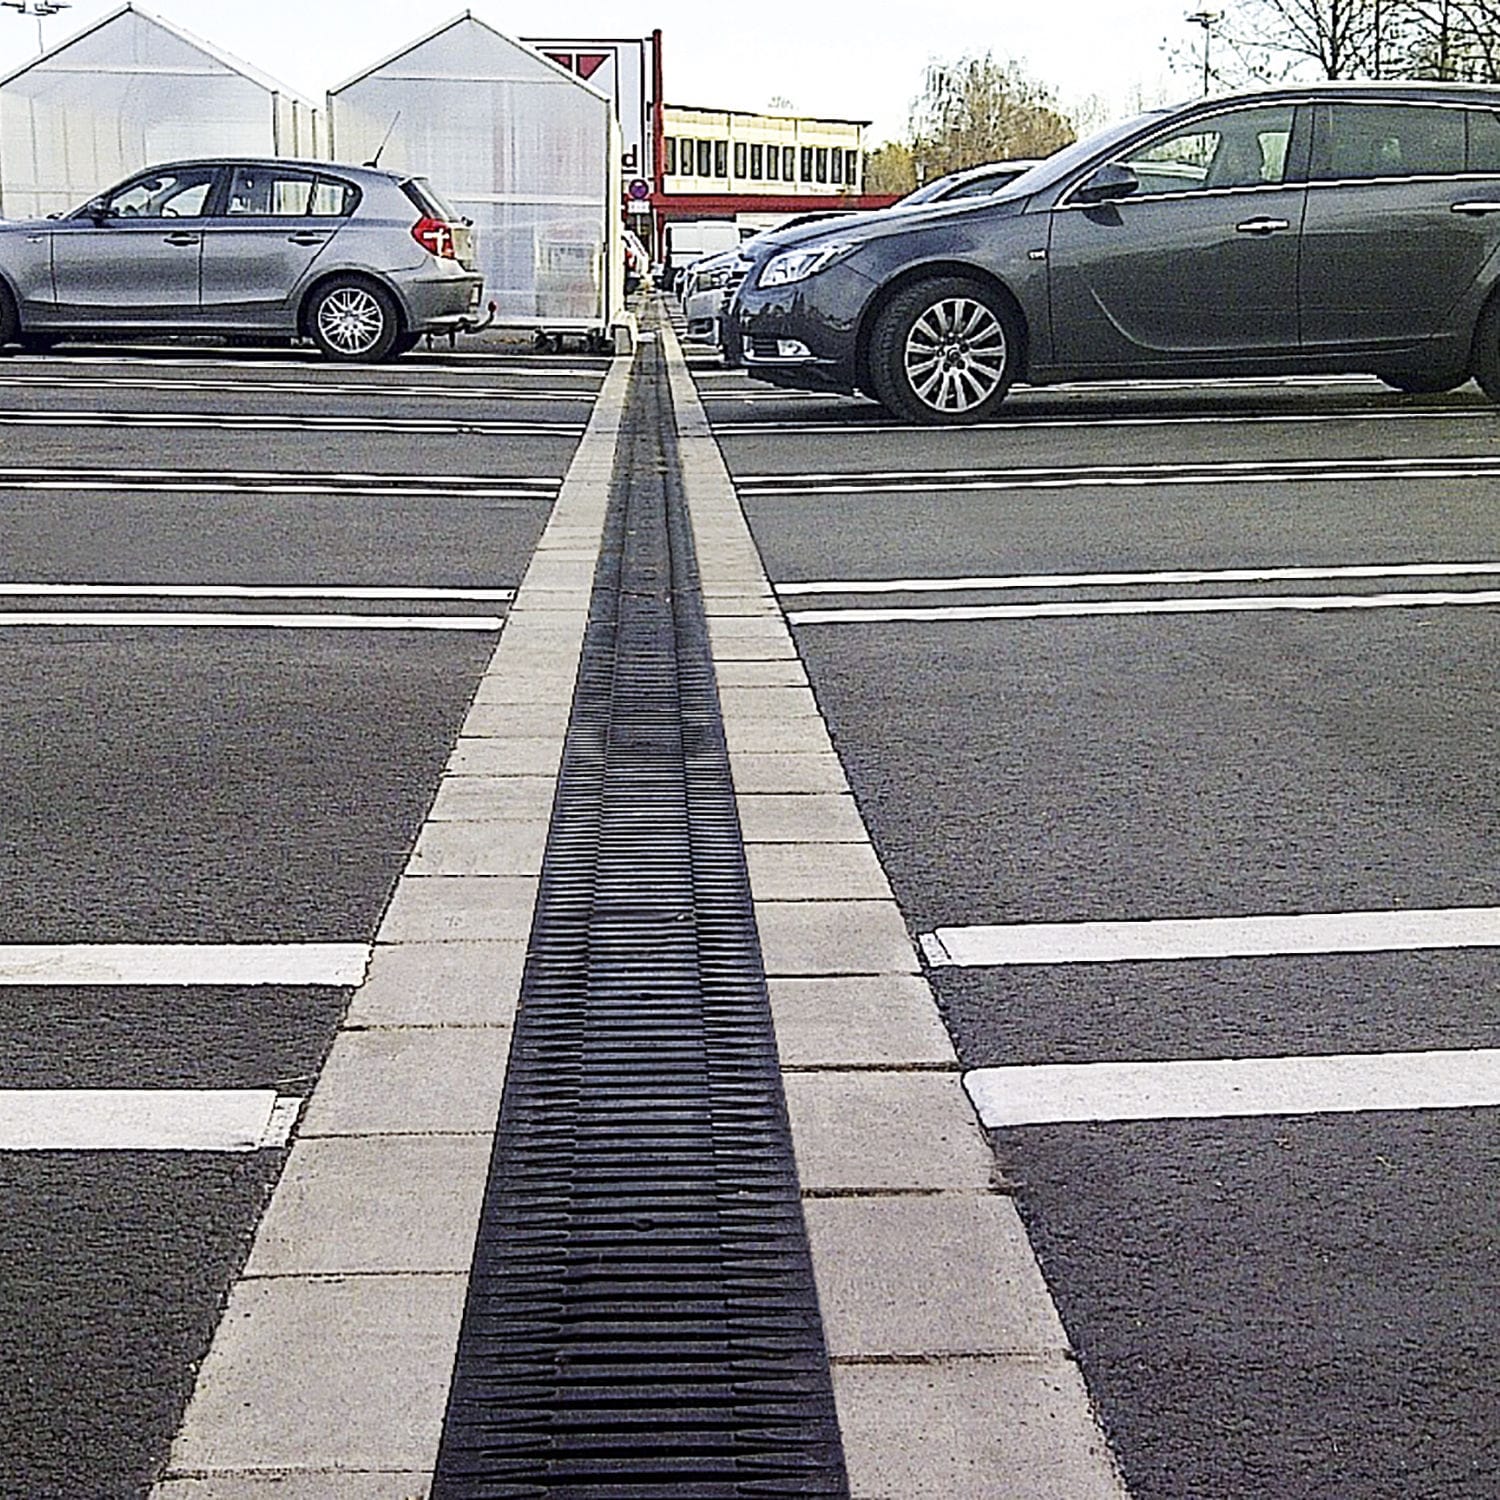 Road drainage photo